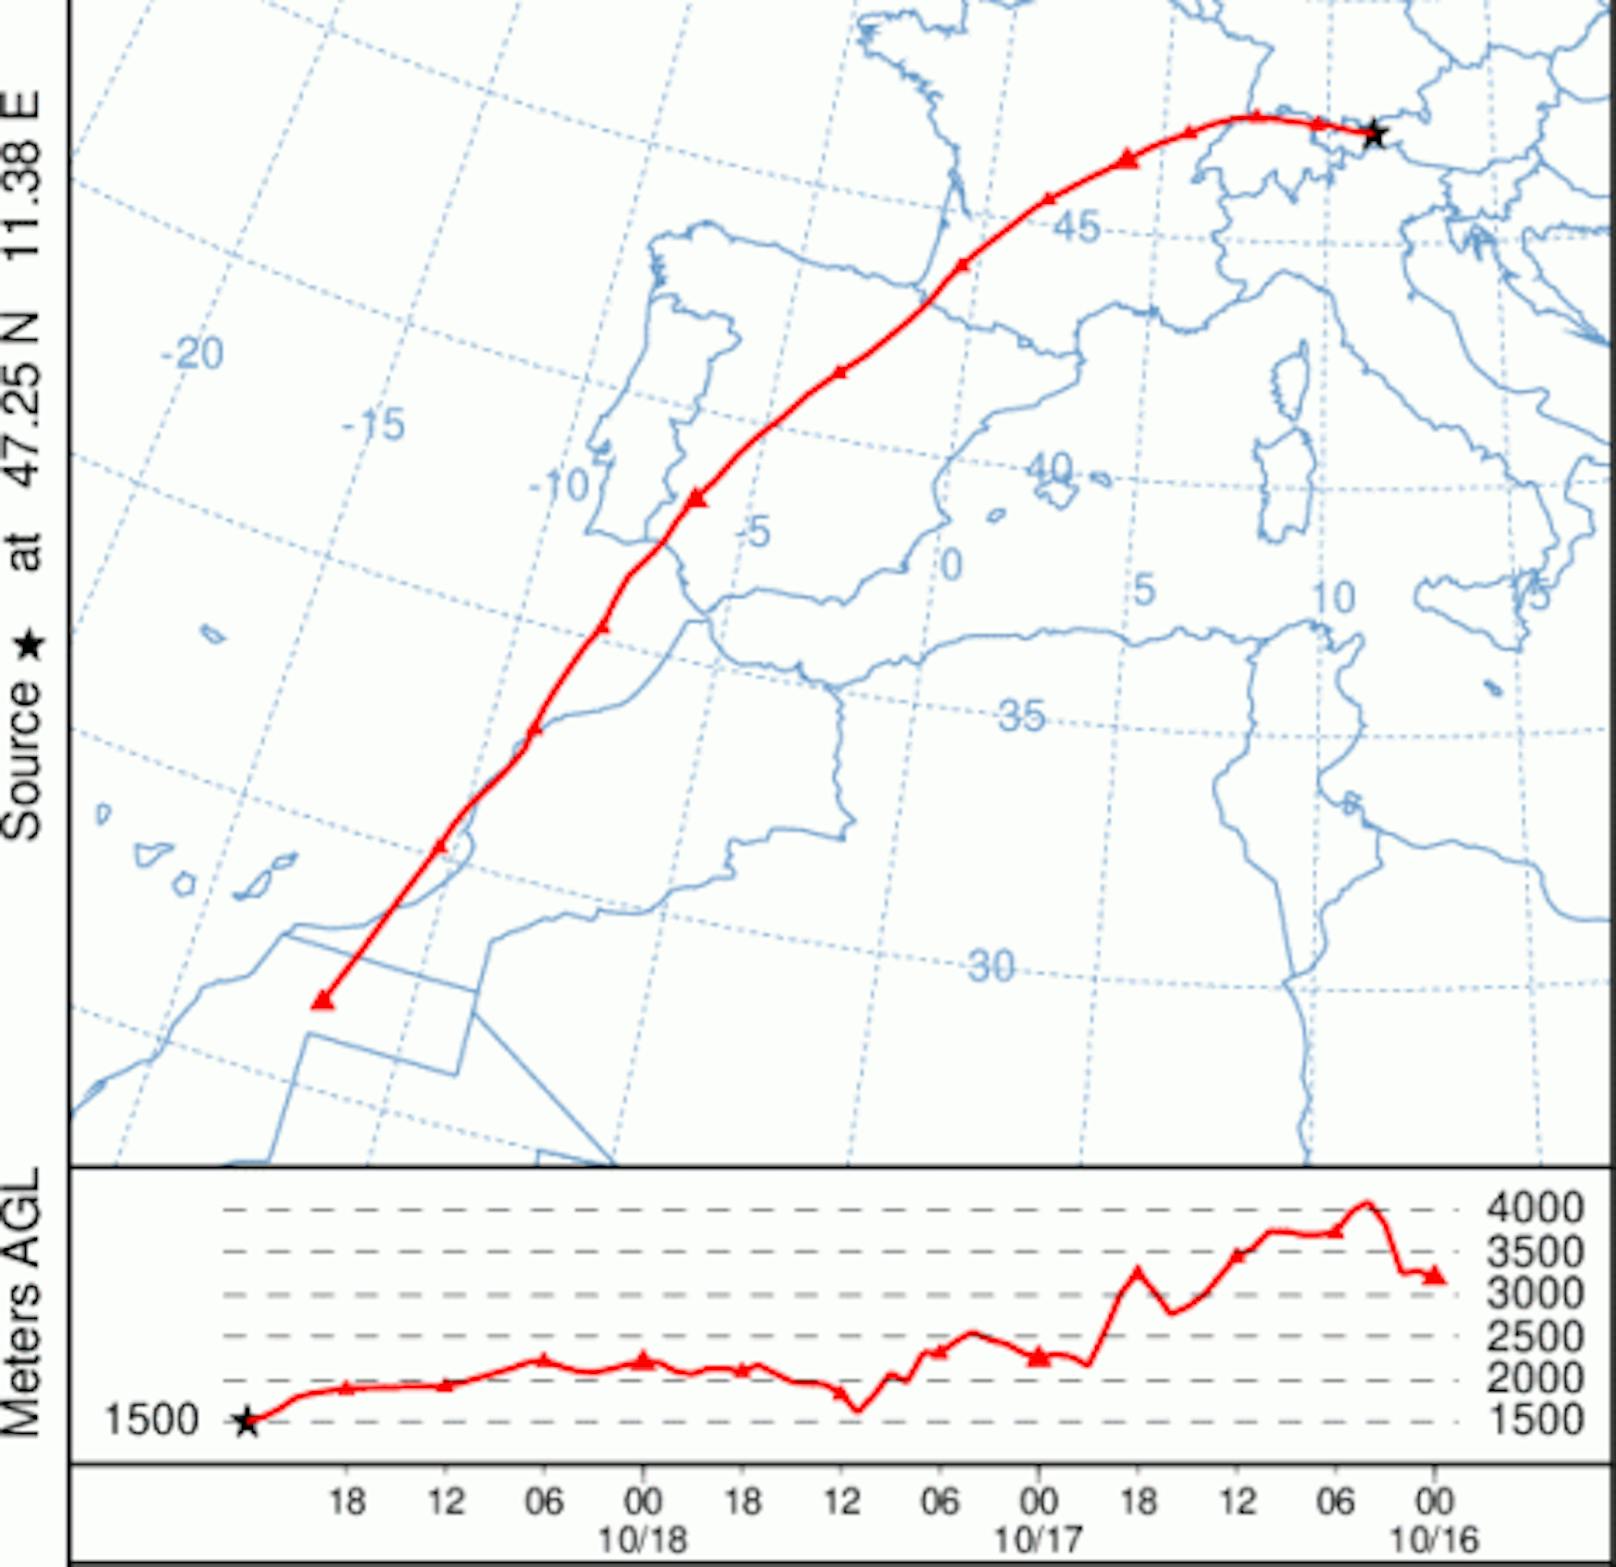 Ursprungsregion der Luftmasse, die sich zur Wochenmitte im Alpenraum befindet wird.